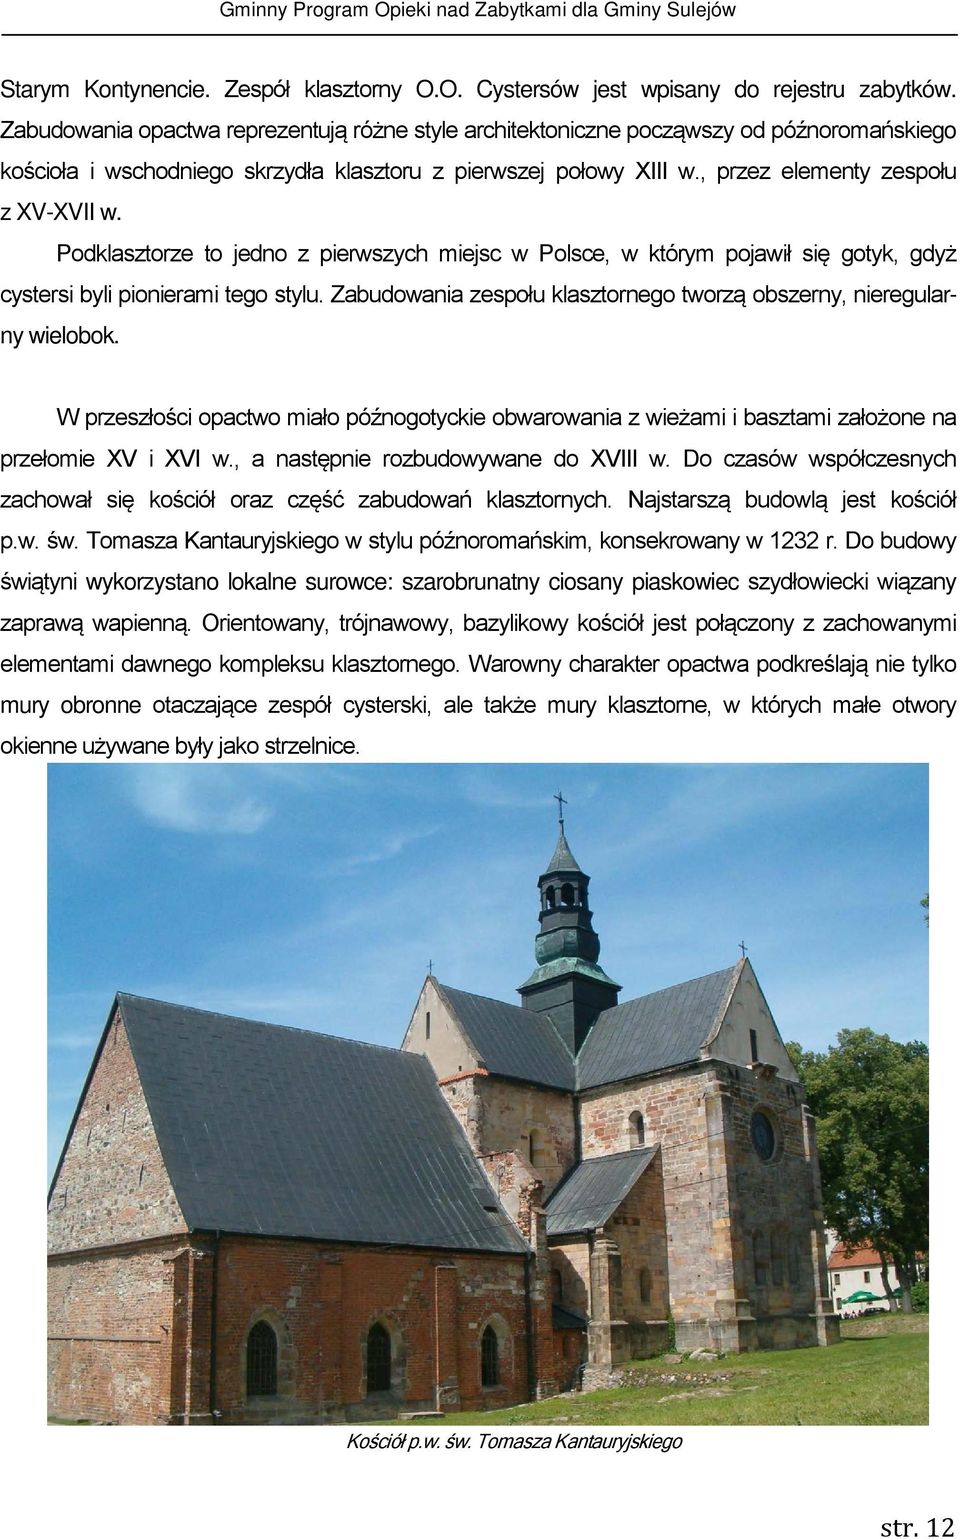 Podklasztorze to jedno z pierwszych miejsc w Polsce, w którym pojawił się gotyk, gdyż cystersi byli pionierami tego stylu. Zabudowania zespołu klasztornego tworzą obszerny, nieregularny wielobok.